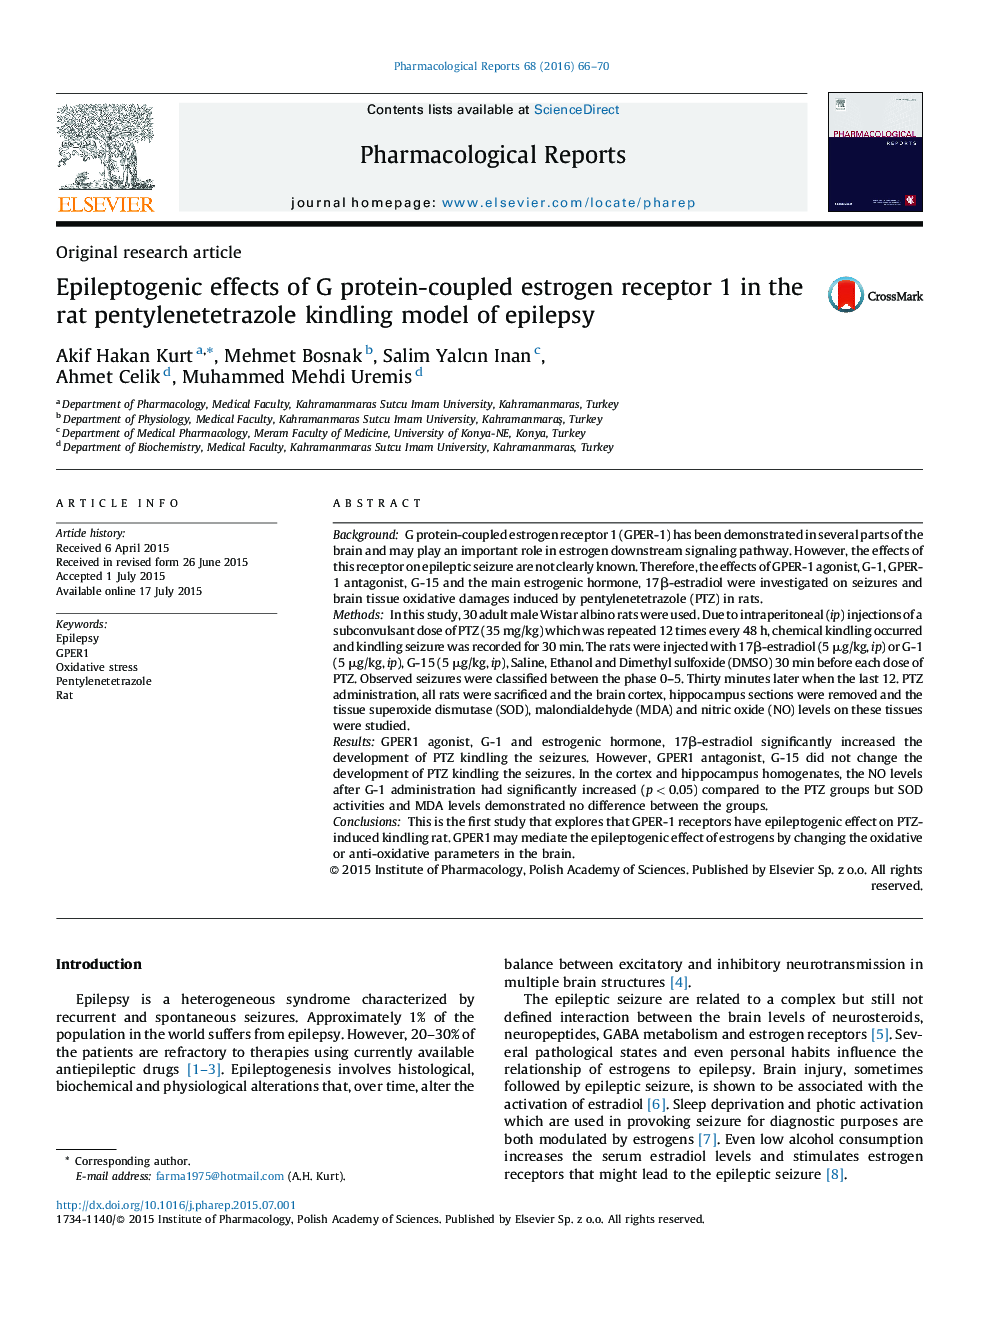 اثرات صرع گیرنده استروژن 1 همراه با پروتئین G در مدل کیندلینگ پنتیلن تترازول صرع در موش